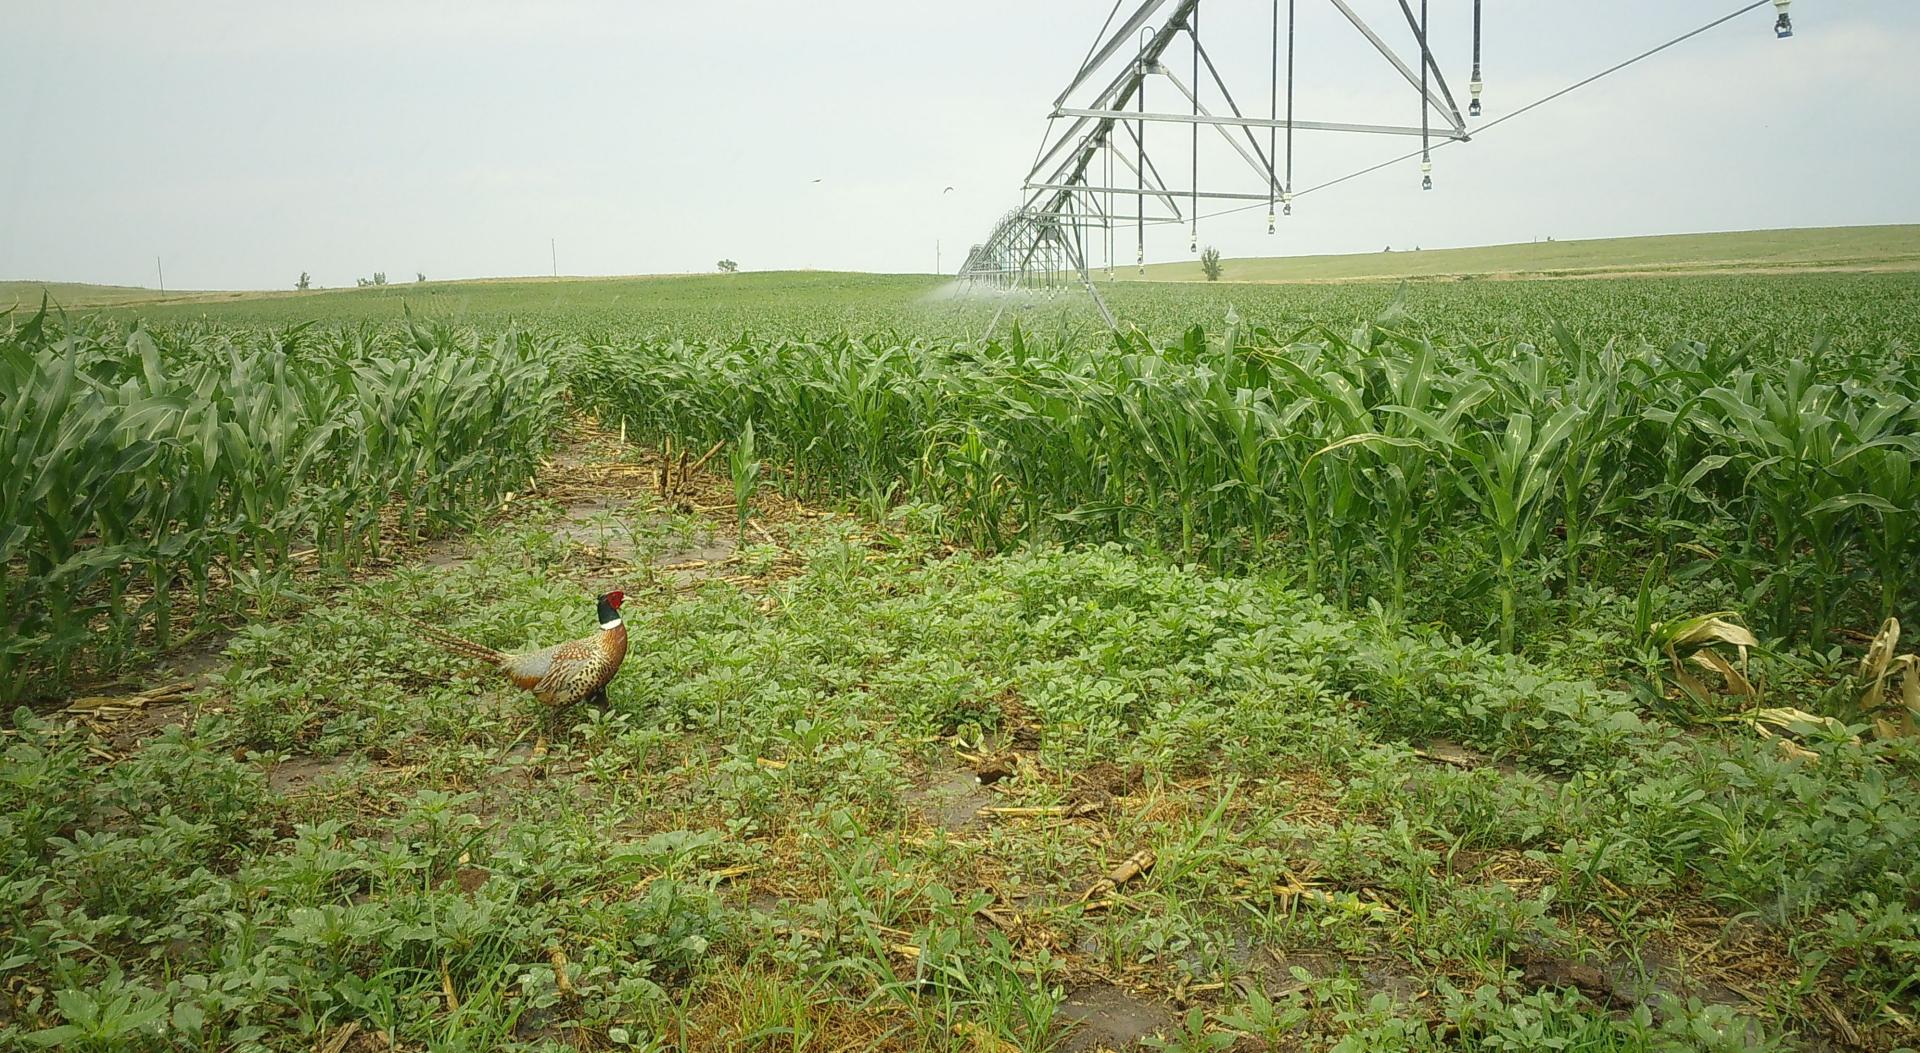 Pheasant in a crop field